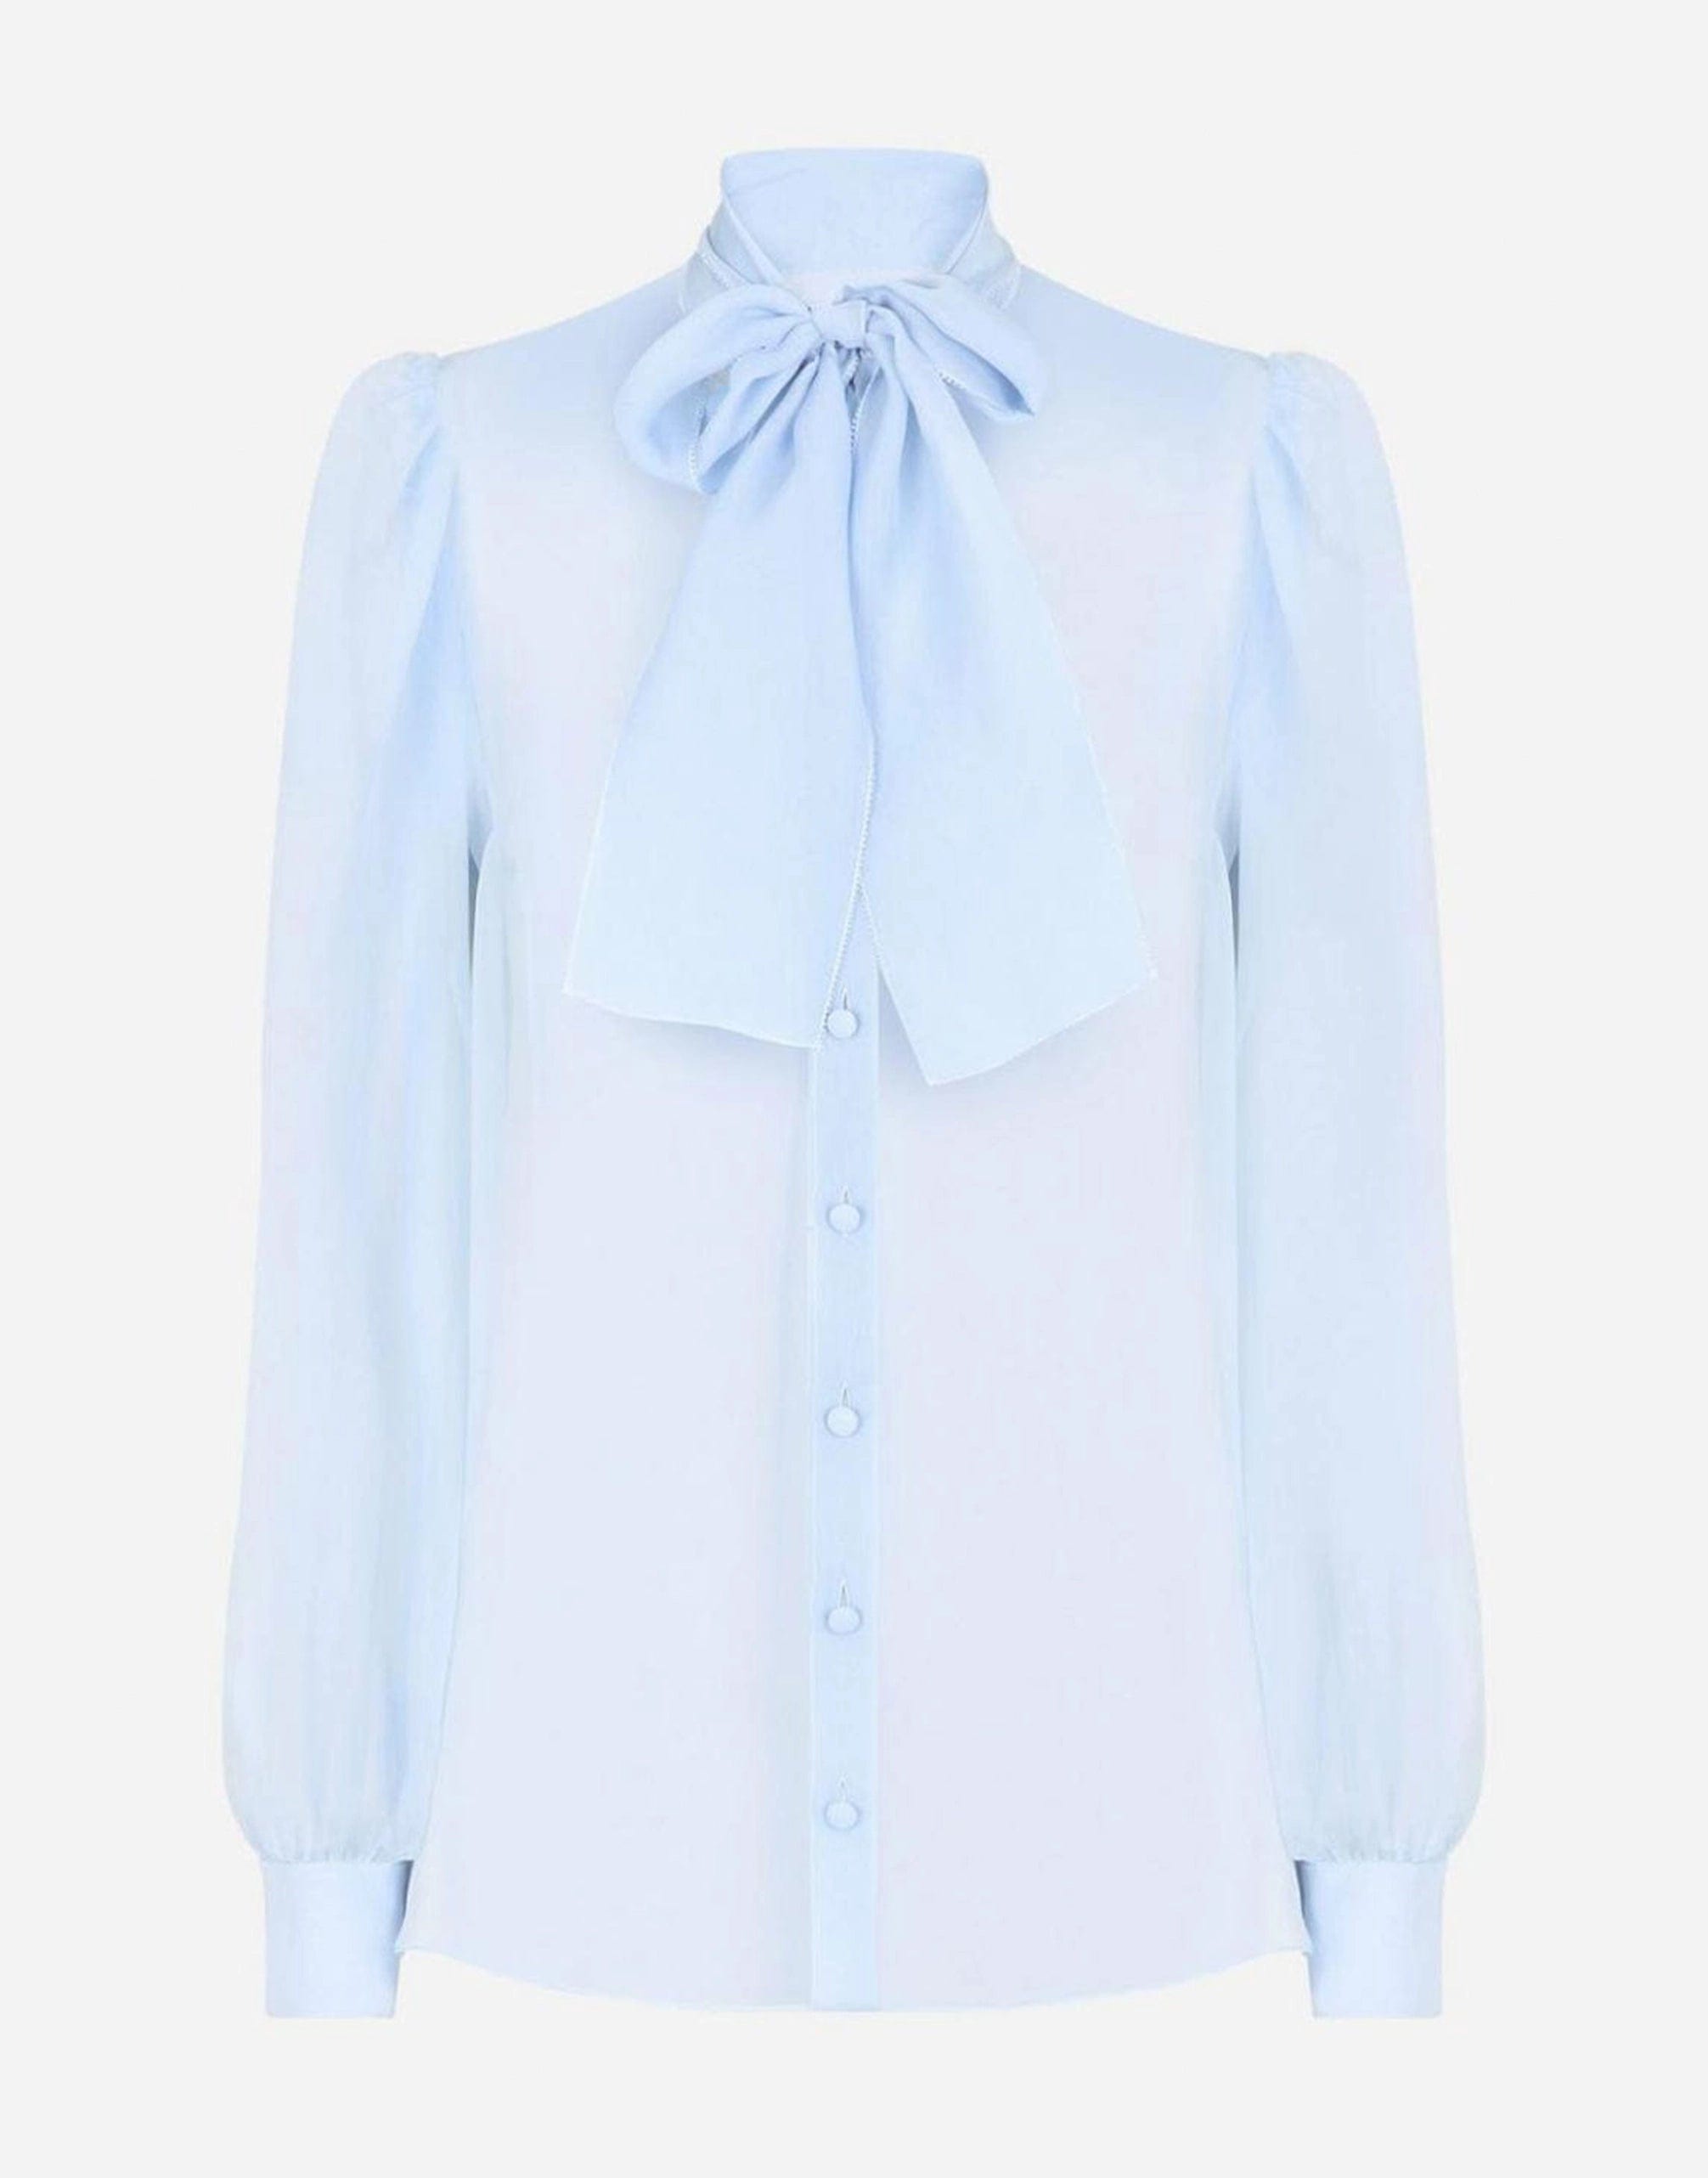 Dolce & Gabbana Sheer Silk Chiffon Shirt With Bow Collar